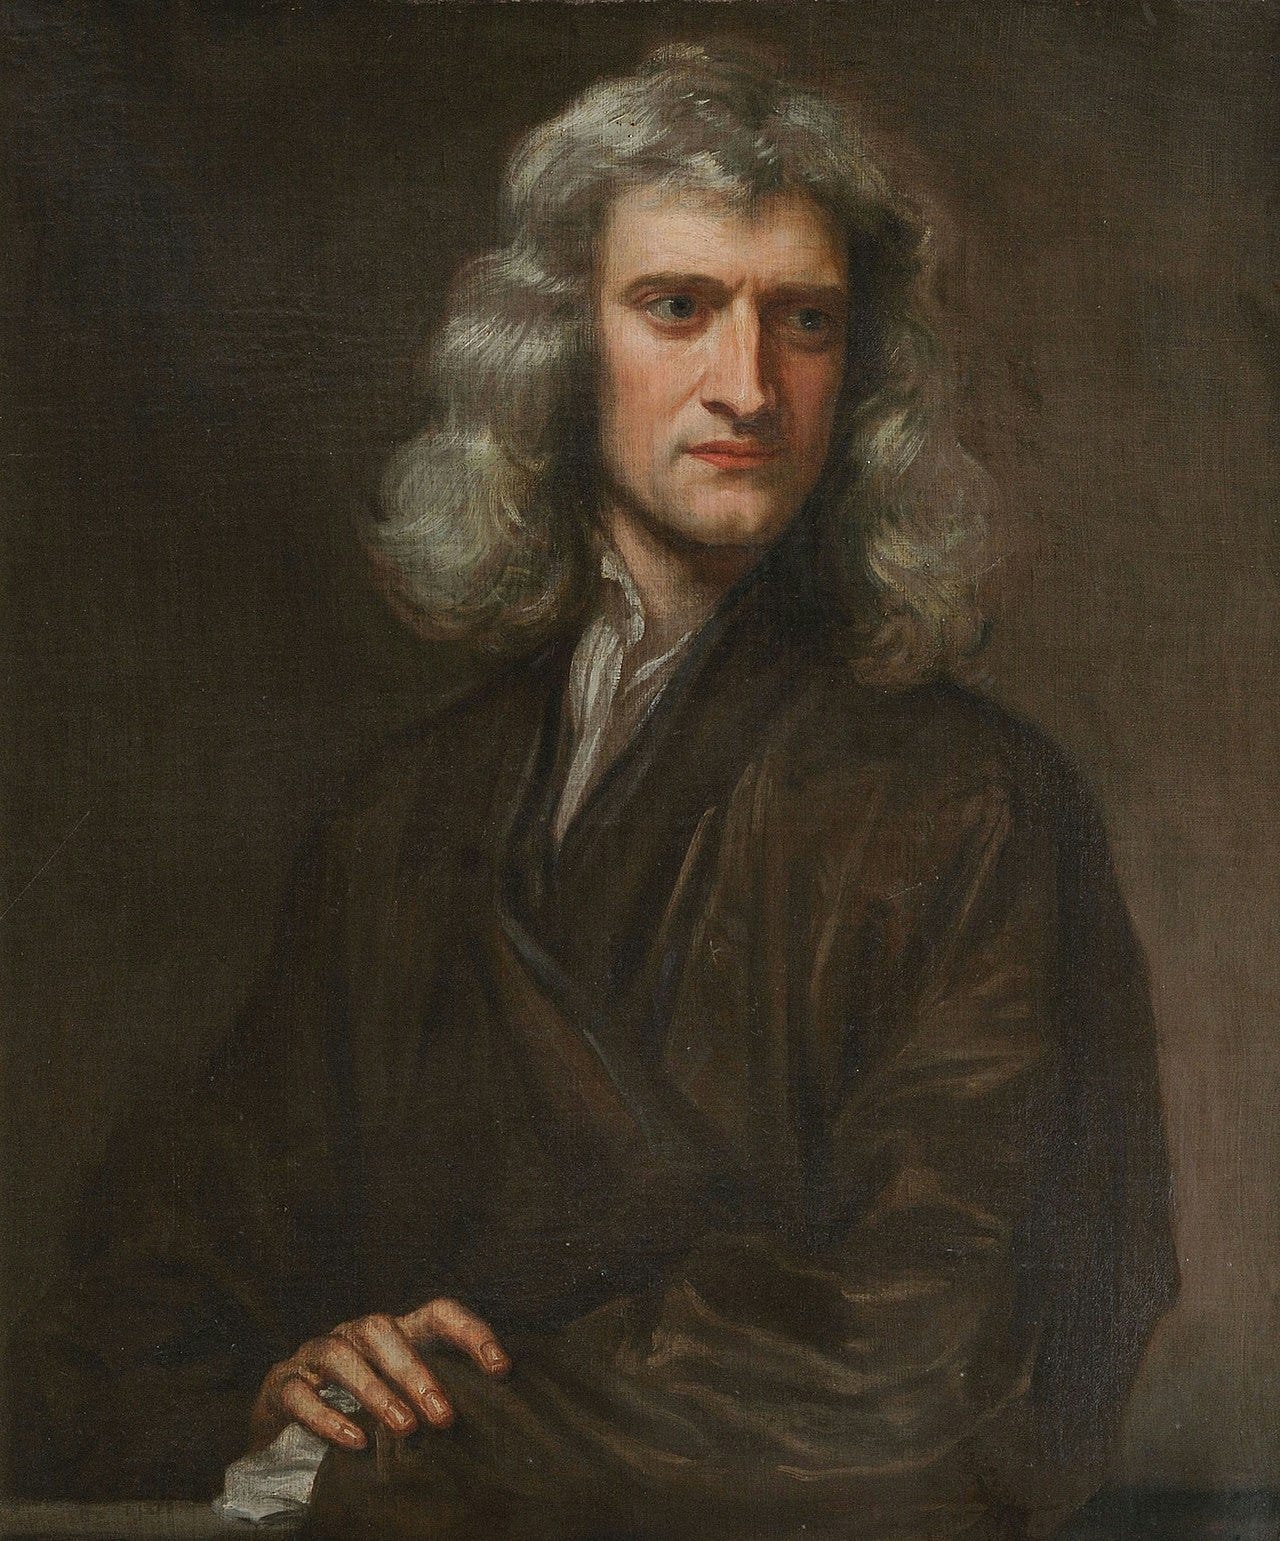 7: Newton & his Orbits